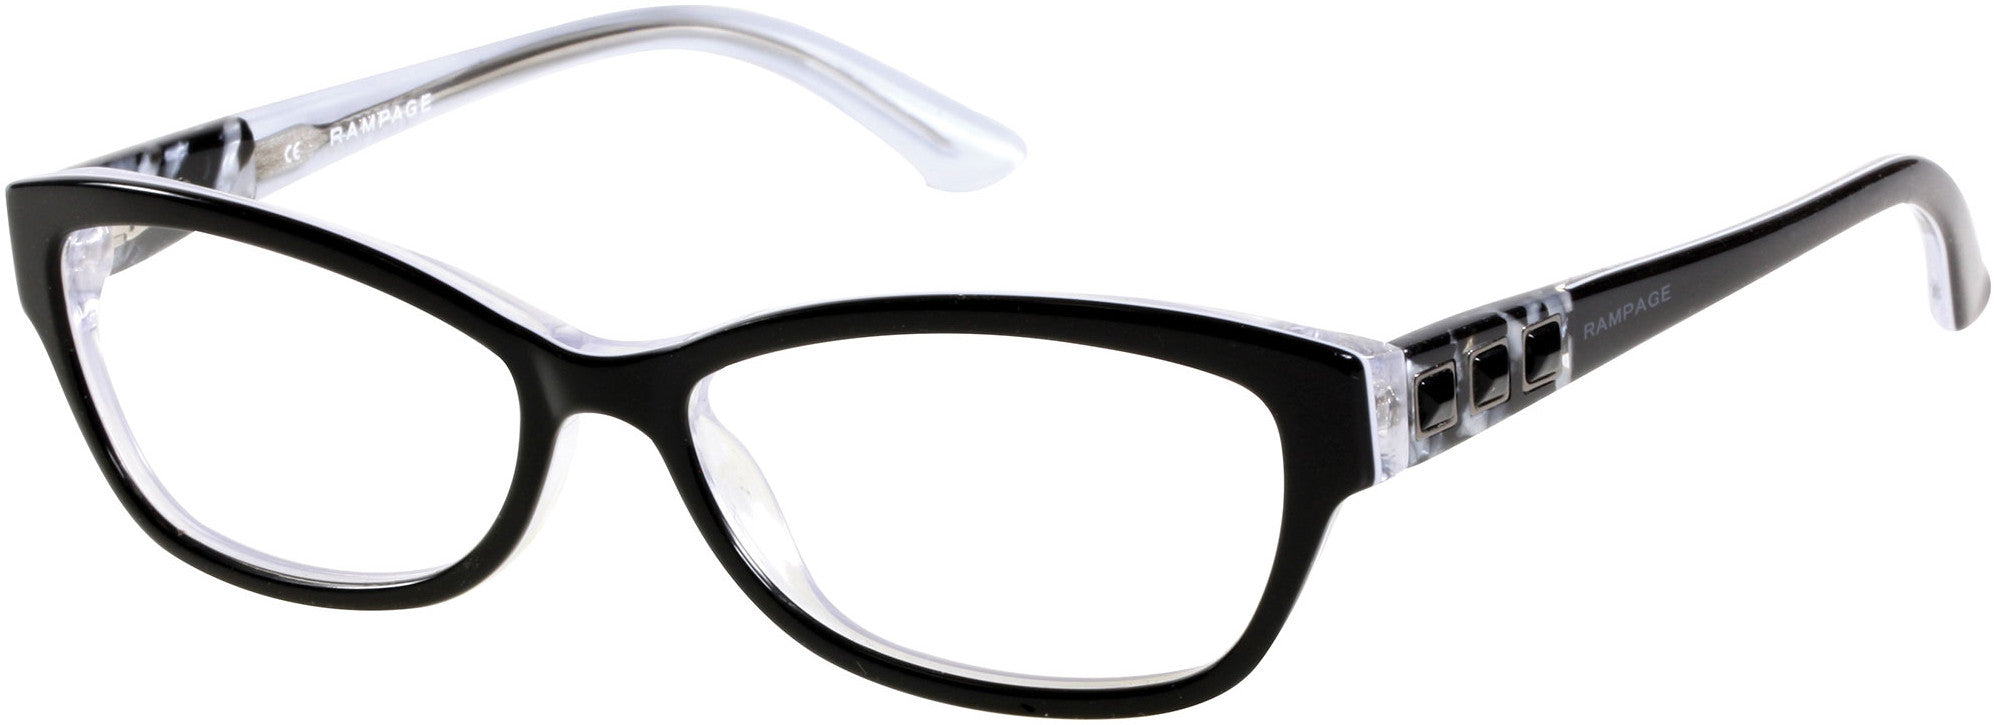 Rampage RA0184 Eyeglasses B84-B84 - Black